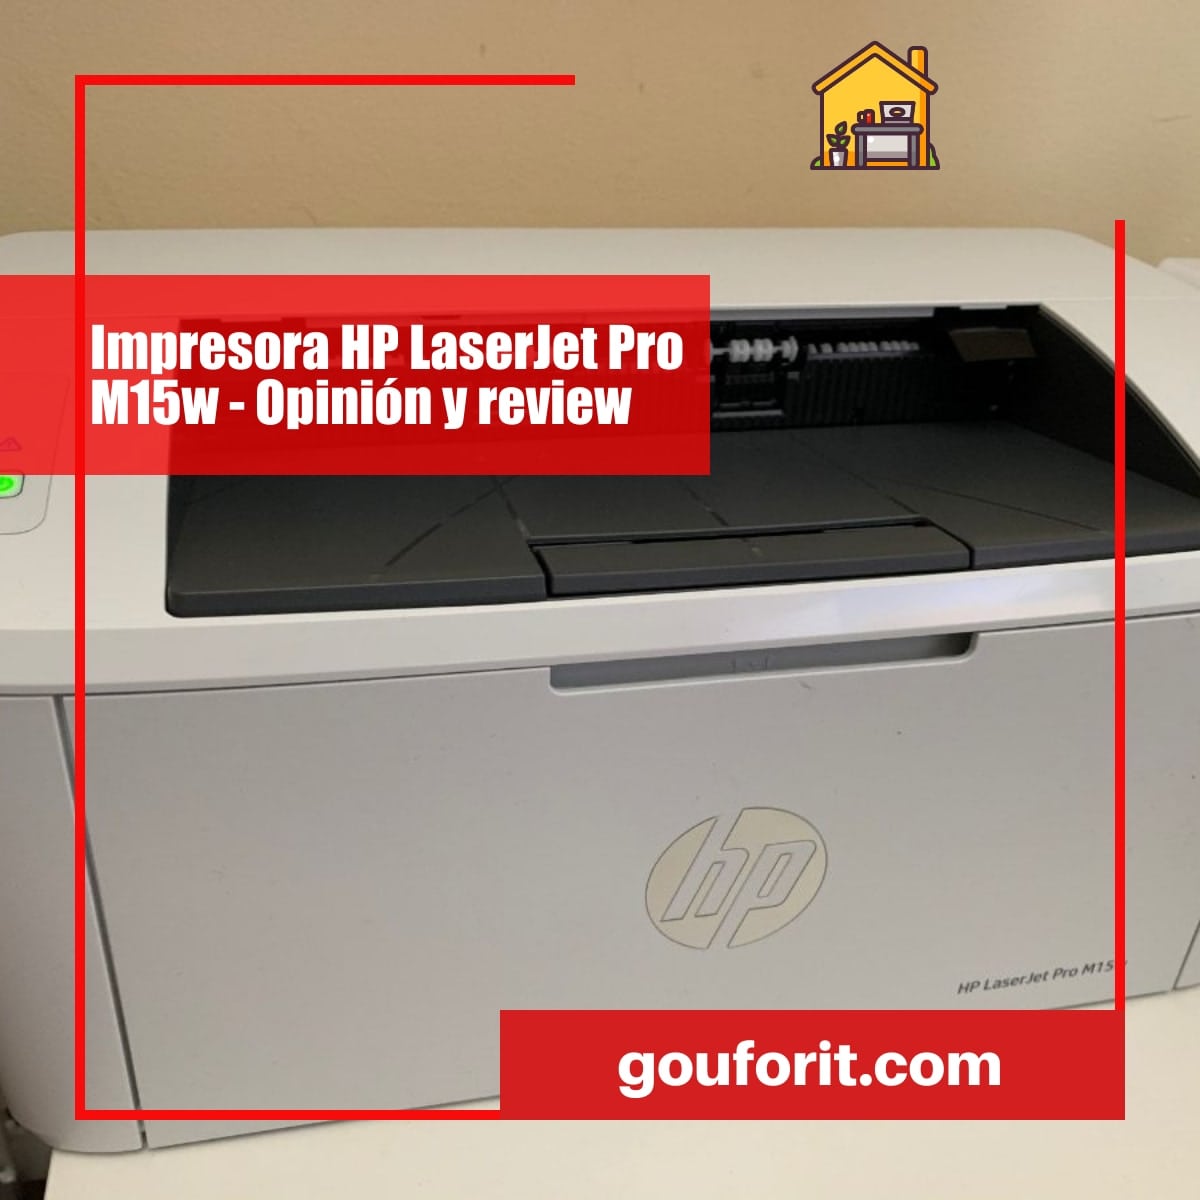 Drama frutas En particular Impresora HP LaserJet Pro M15w - Opinión y review